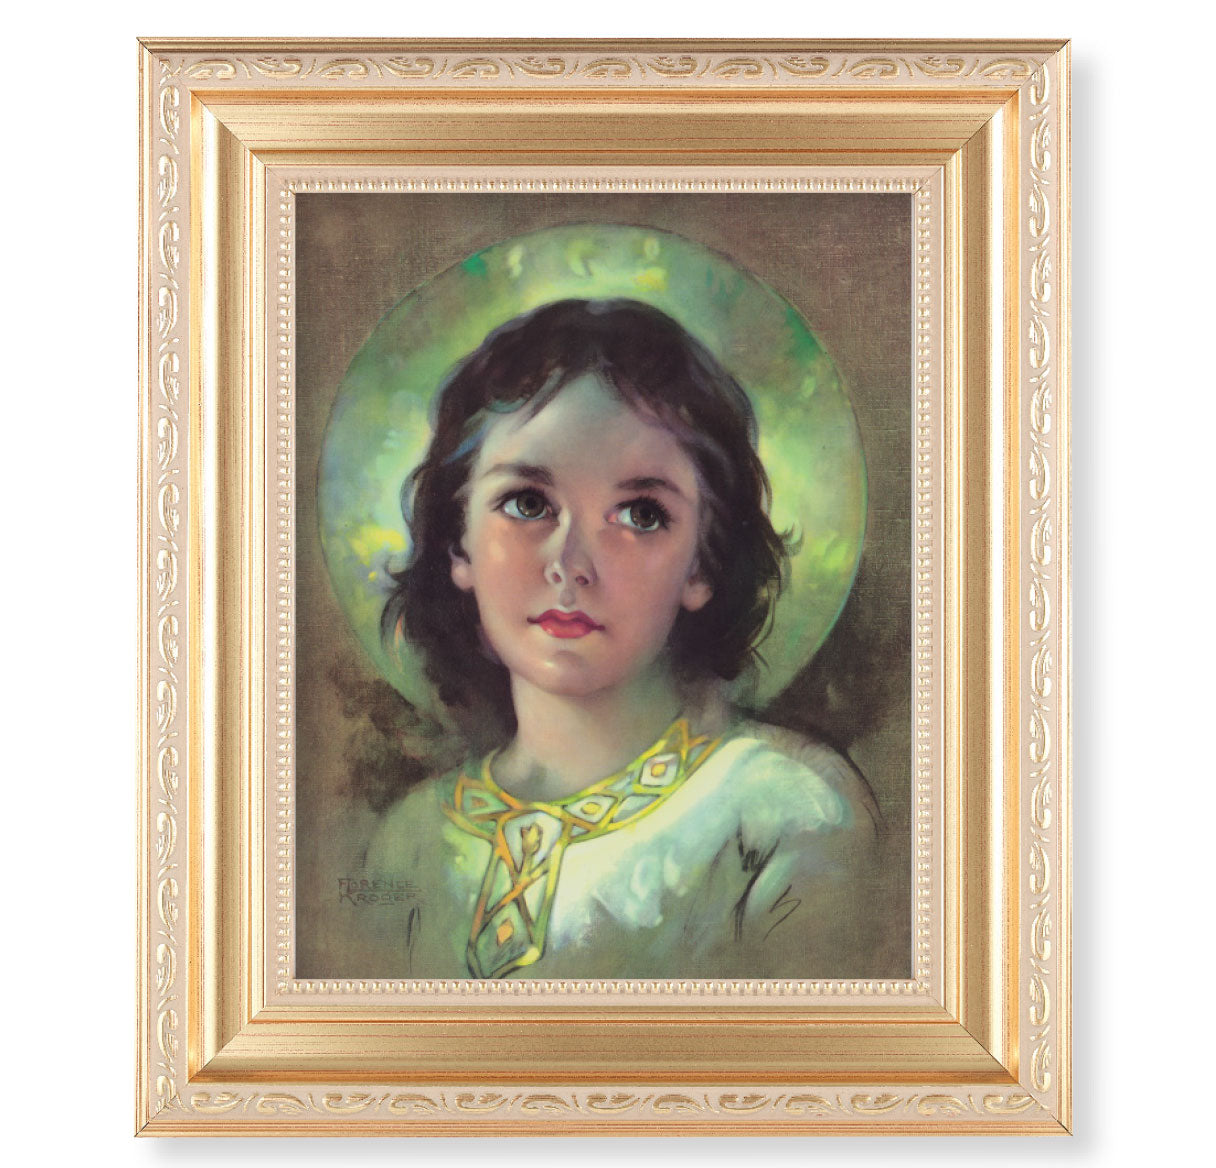 The Child Jesus Gold Framed Art